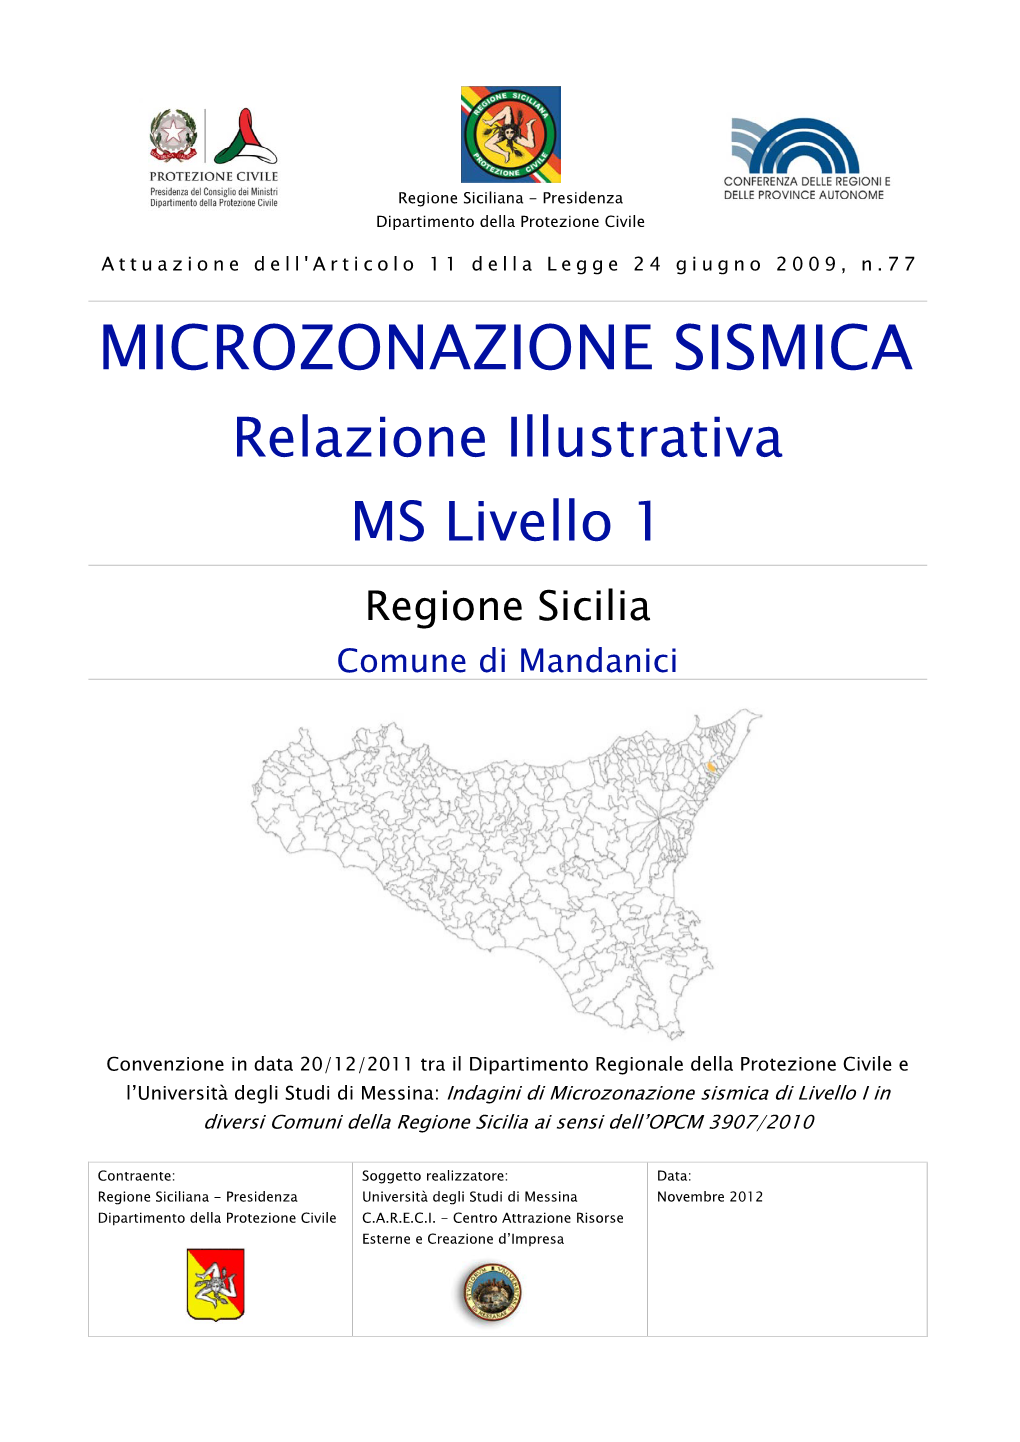 MICROZONAZIONE SISMICA Relazione Illustrativa MS Livello 1 Regione Sicilia Comune Di Mandanici